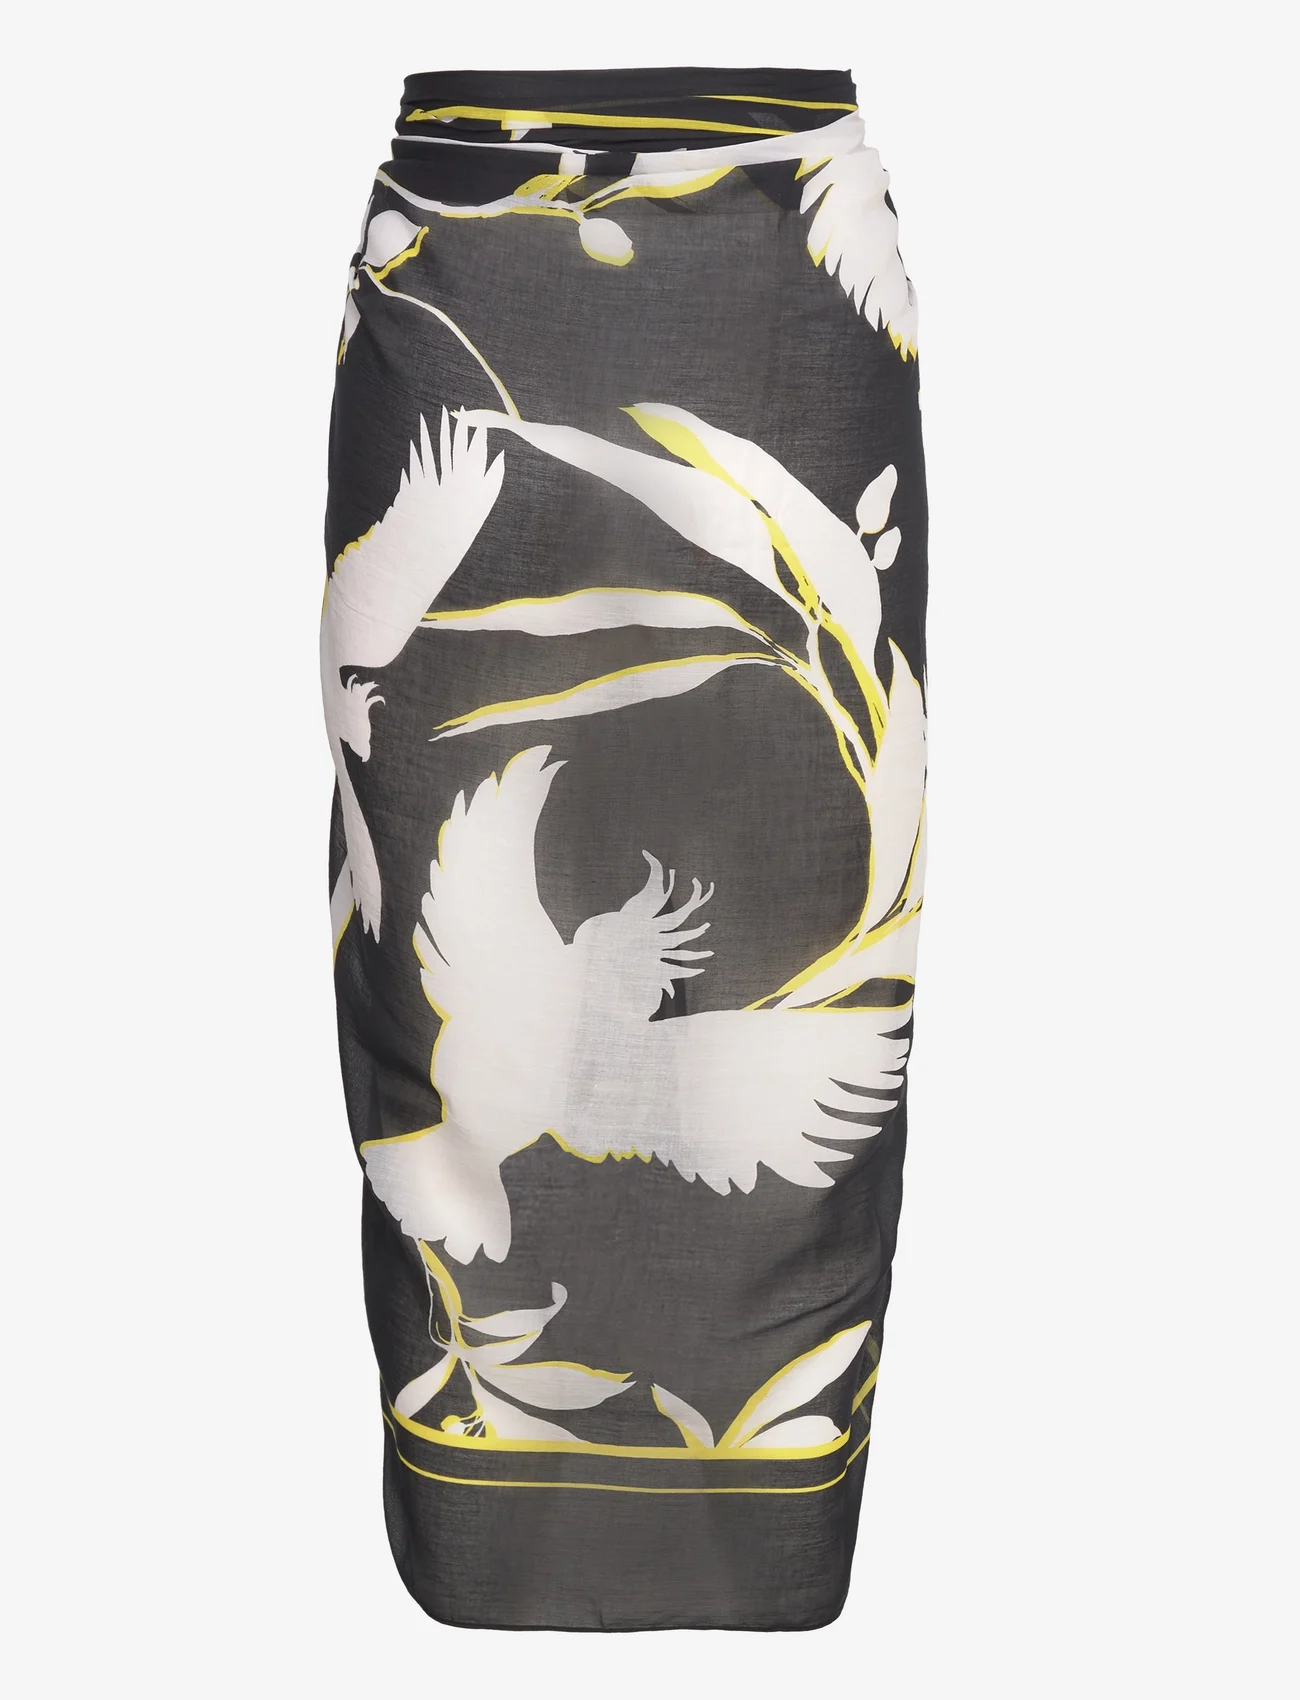 Seafolly - BirdsOfParadise Sarong - beachwear - black - 1